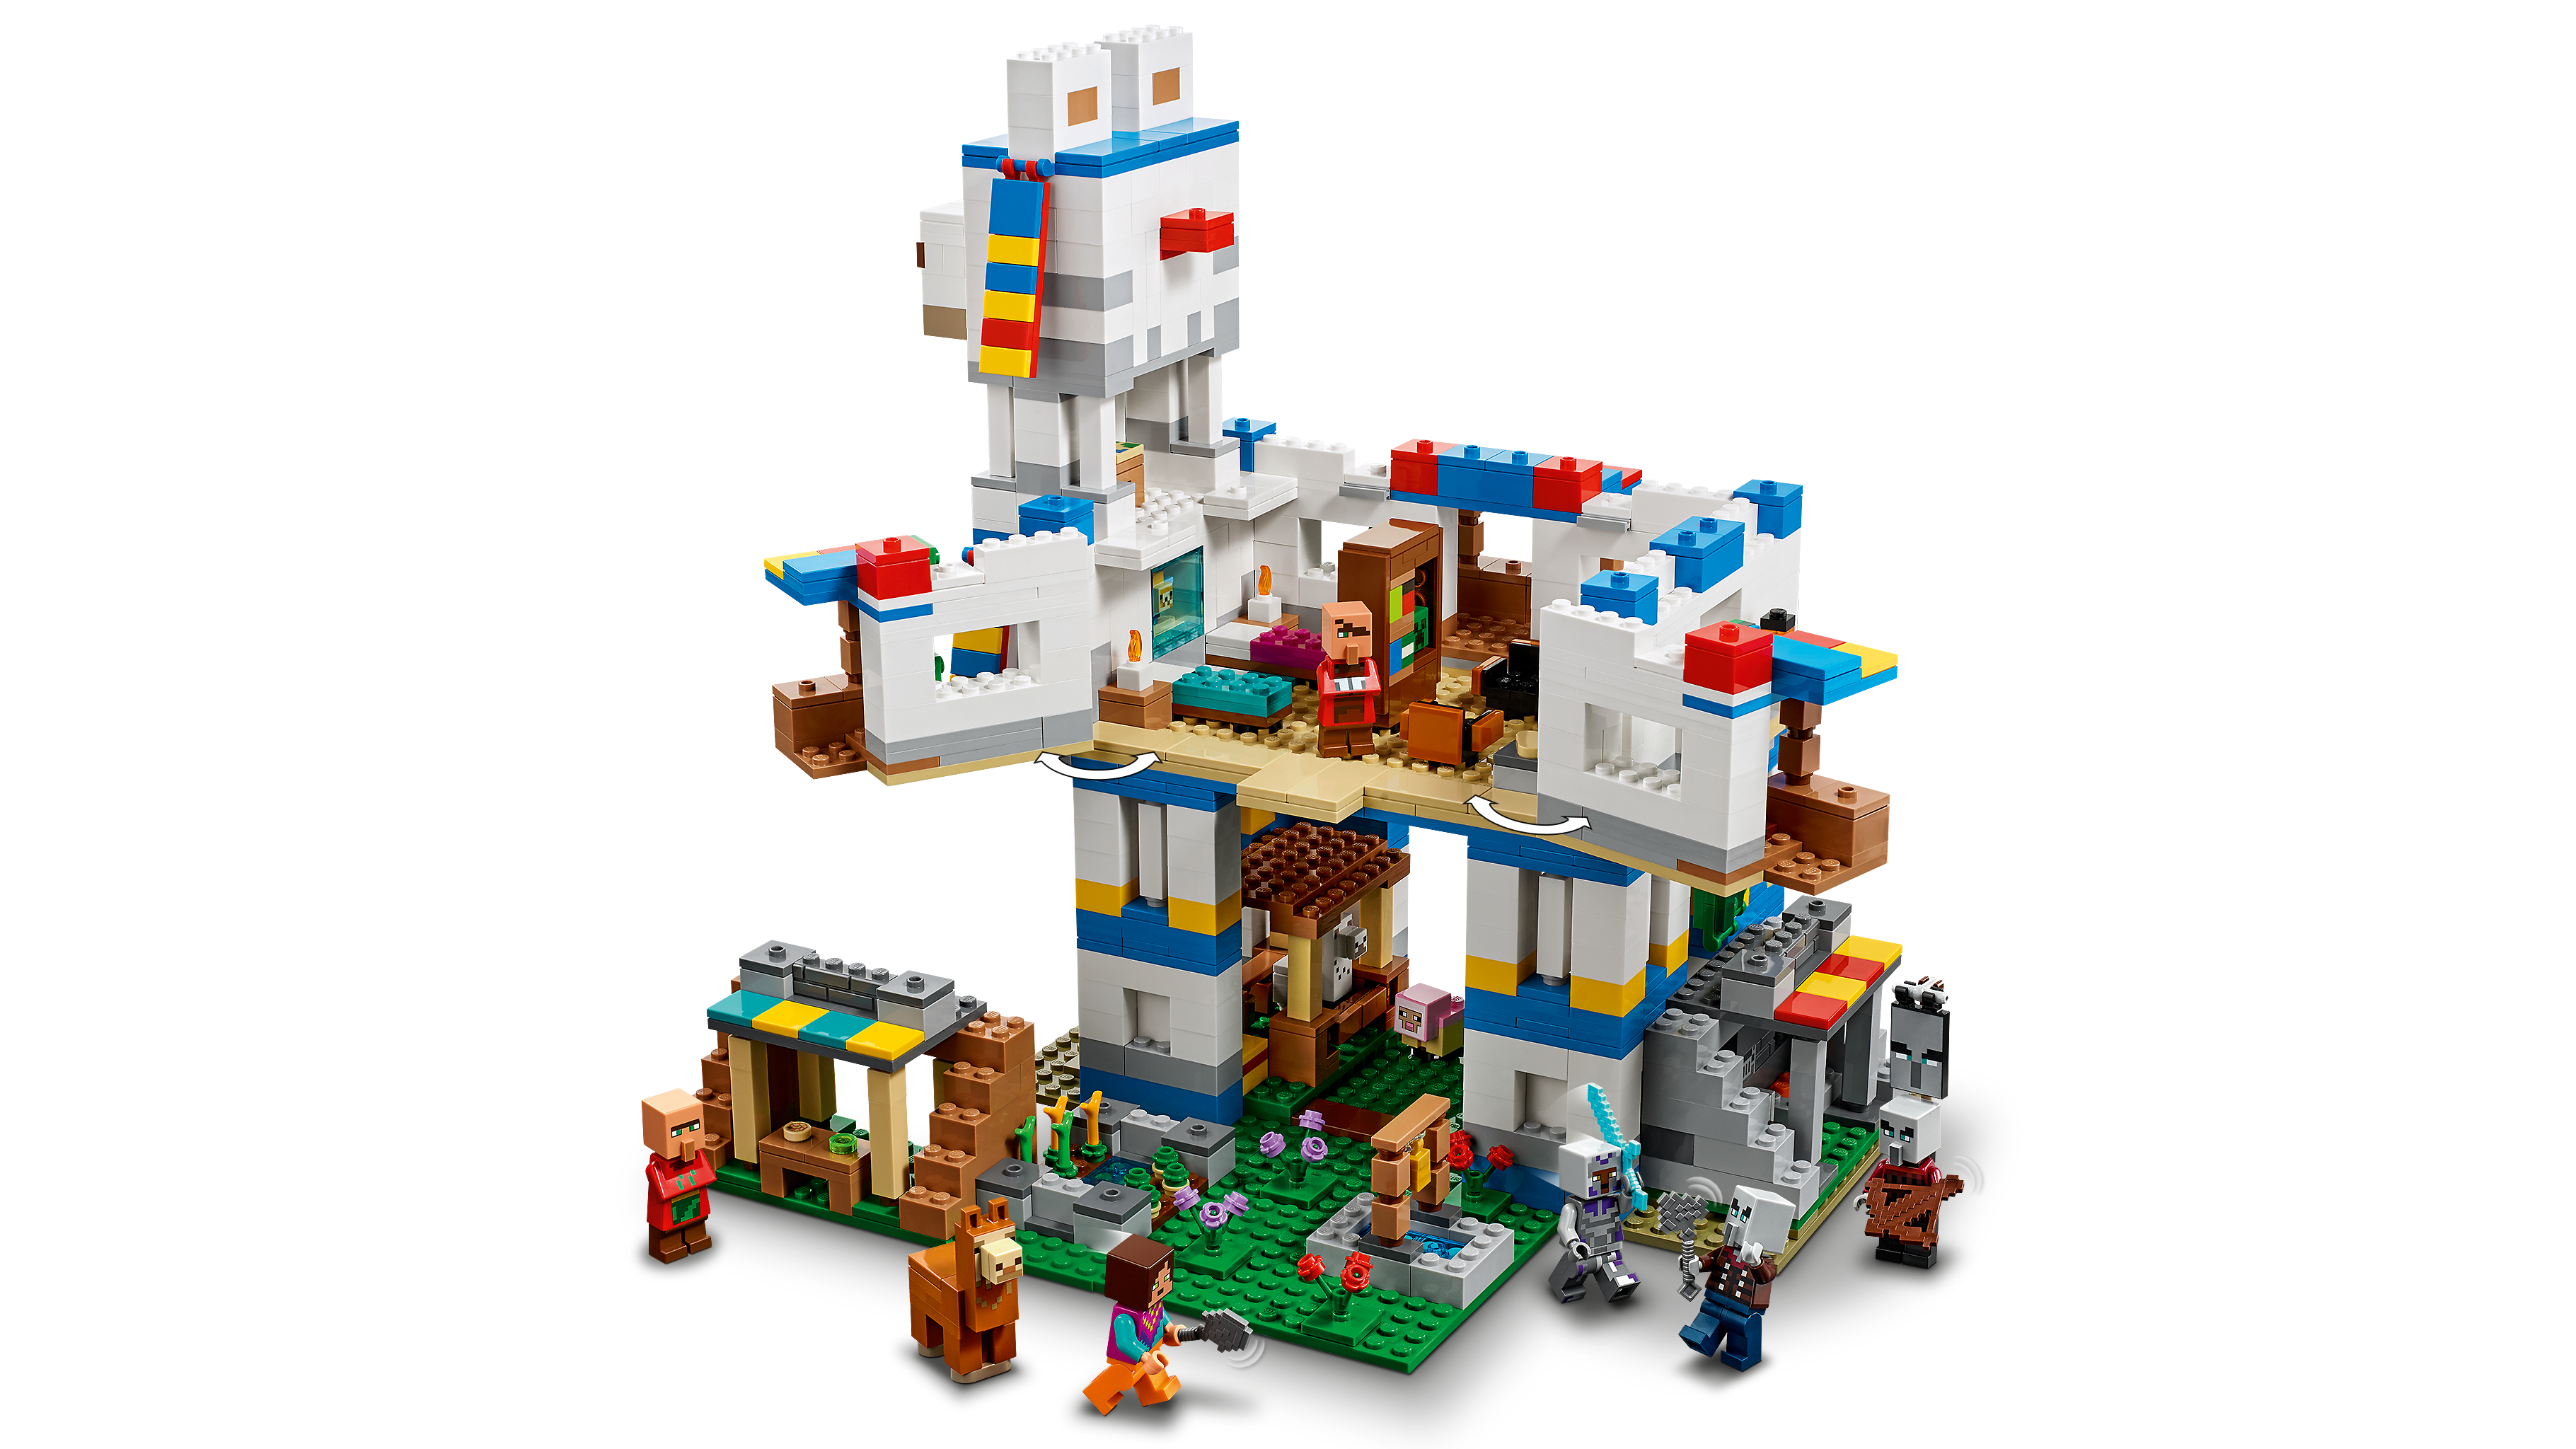 ラマの村 21188 - レゴ®マインクラフト セット - LEGO.comキッズ